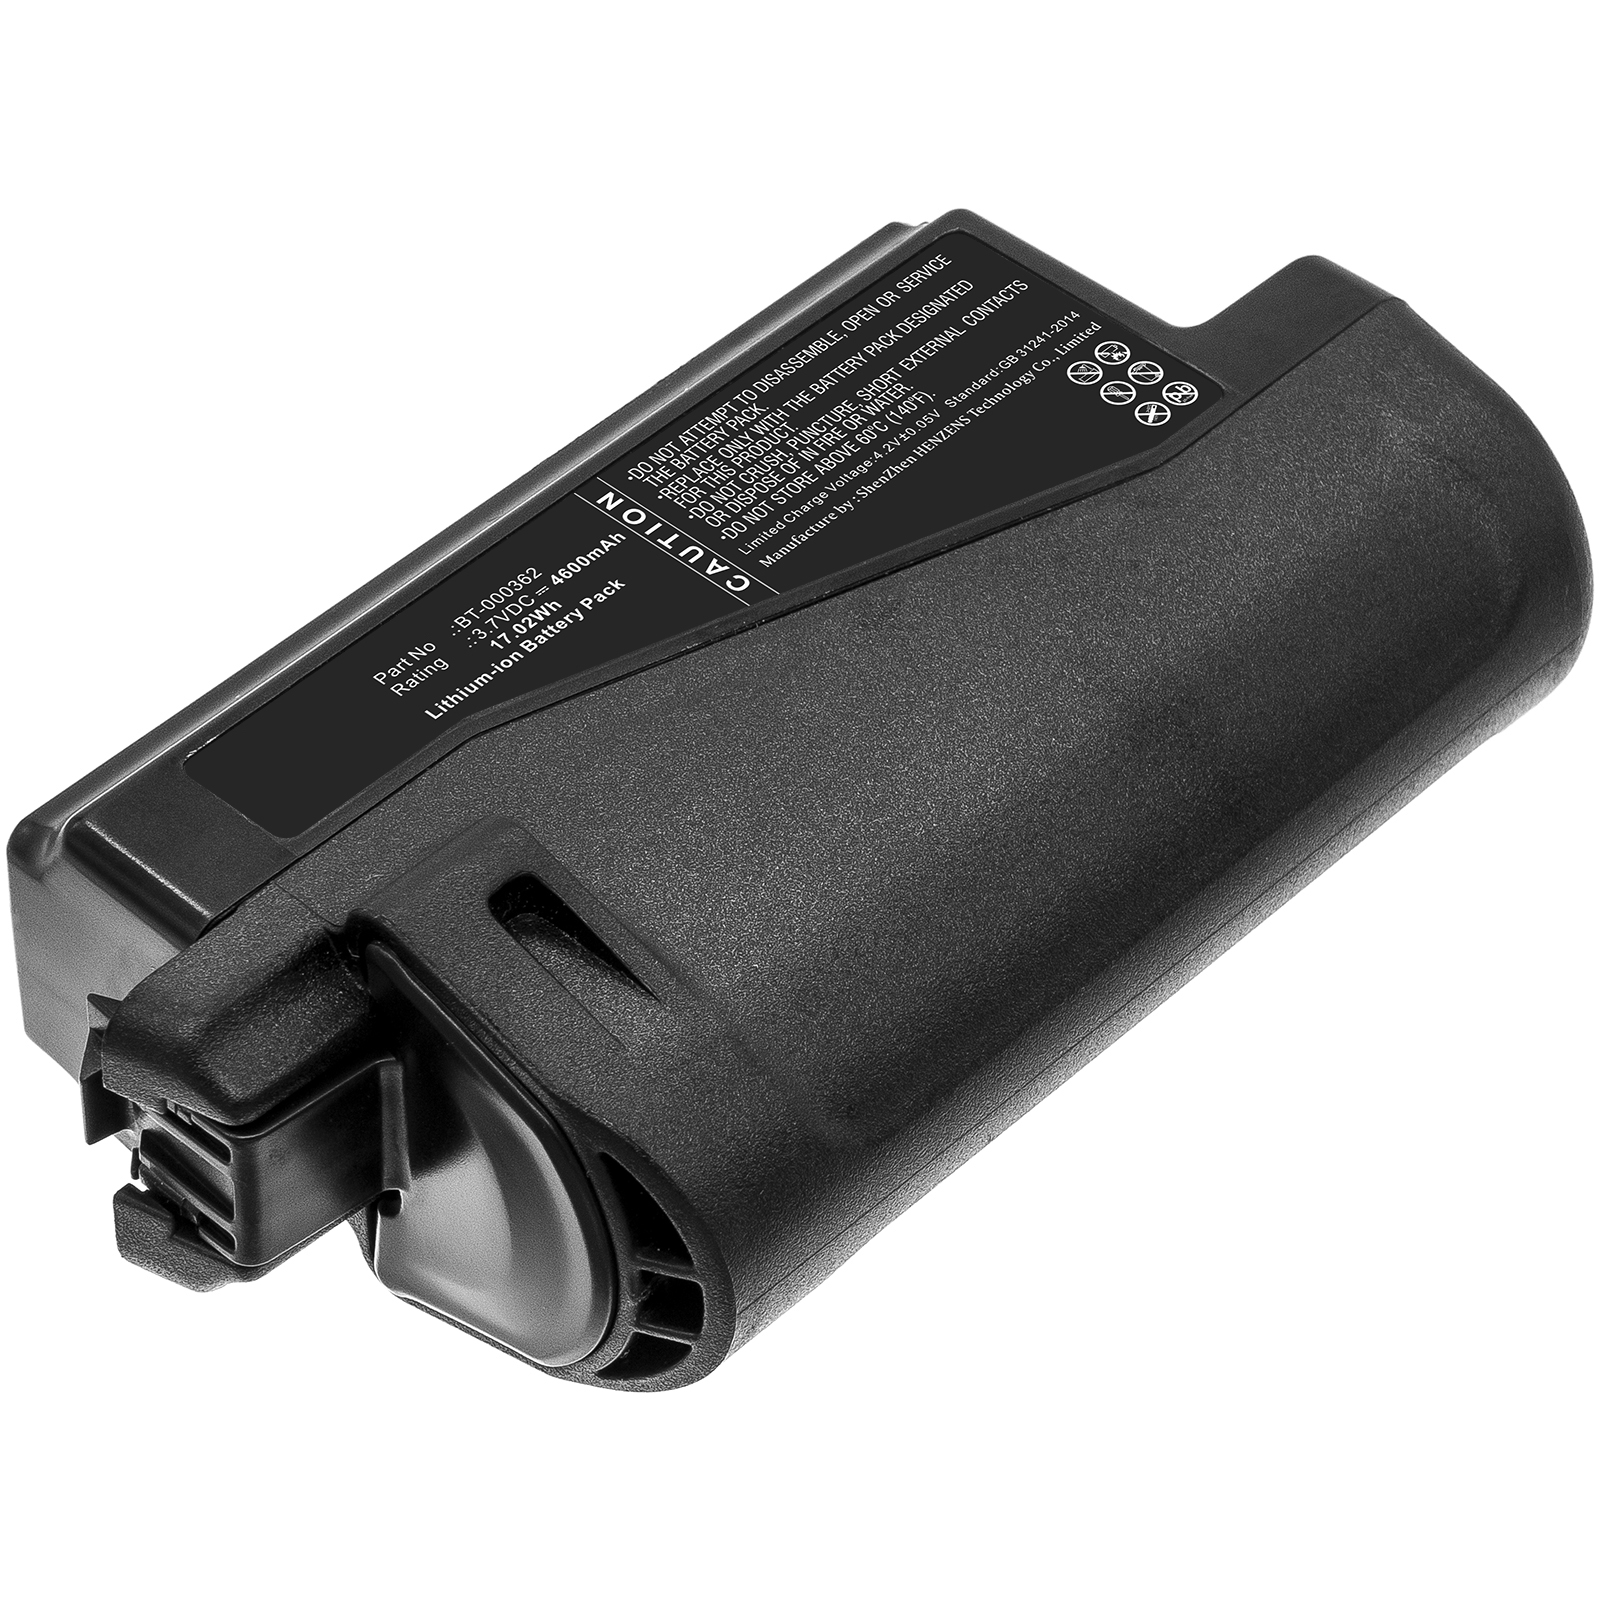 Synergy Digital Barcode Scanner Battery, Compatible with Zebra BT-000362 Barcode Scanner Battery (Li-ion, 3.7V, 4600mAh)